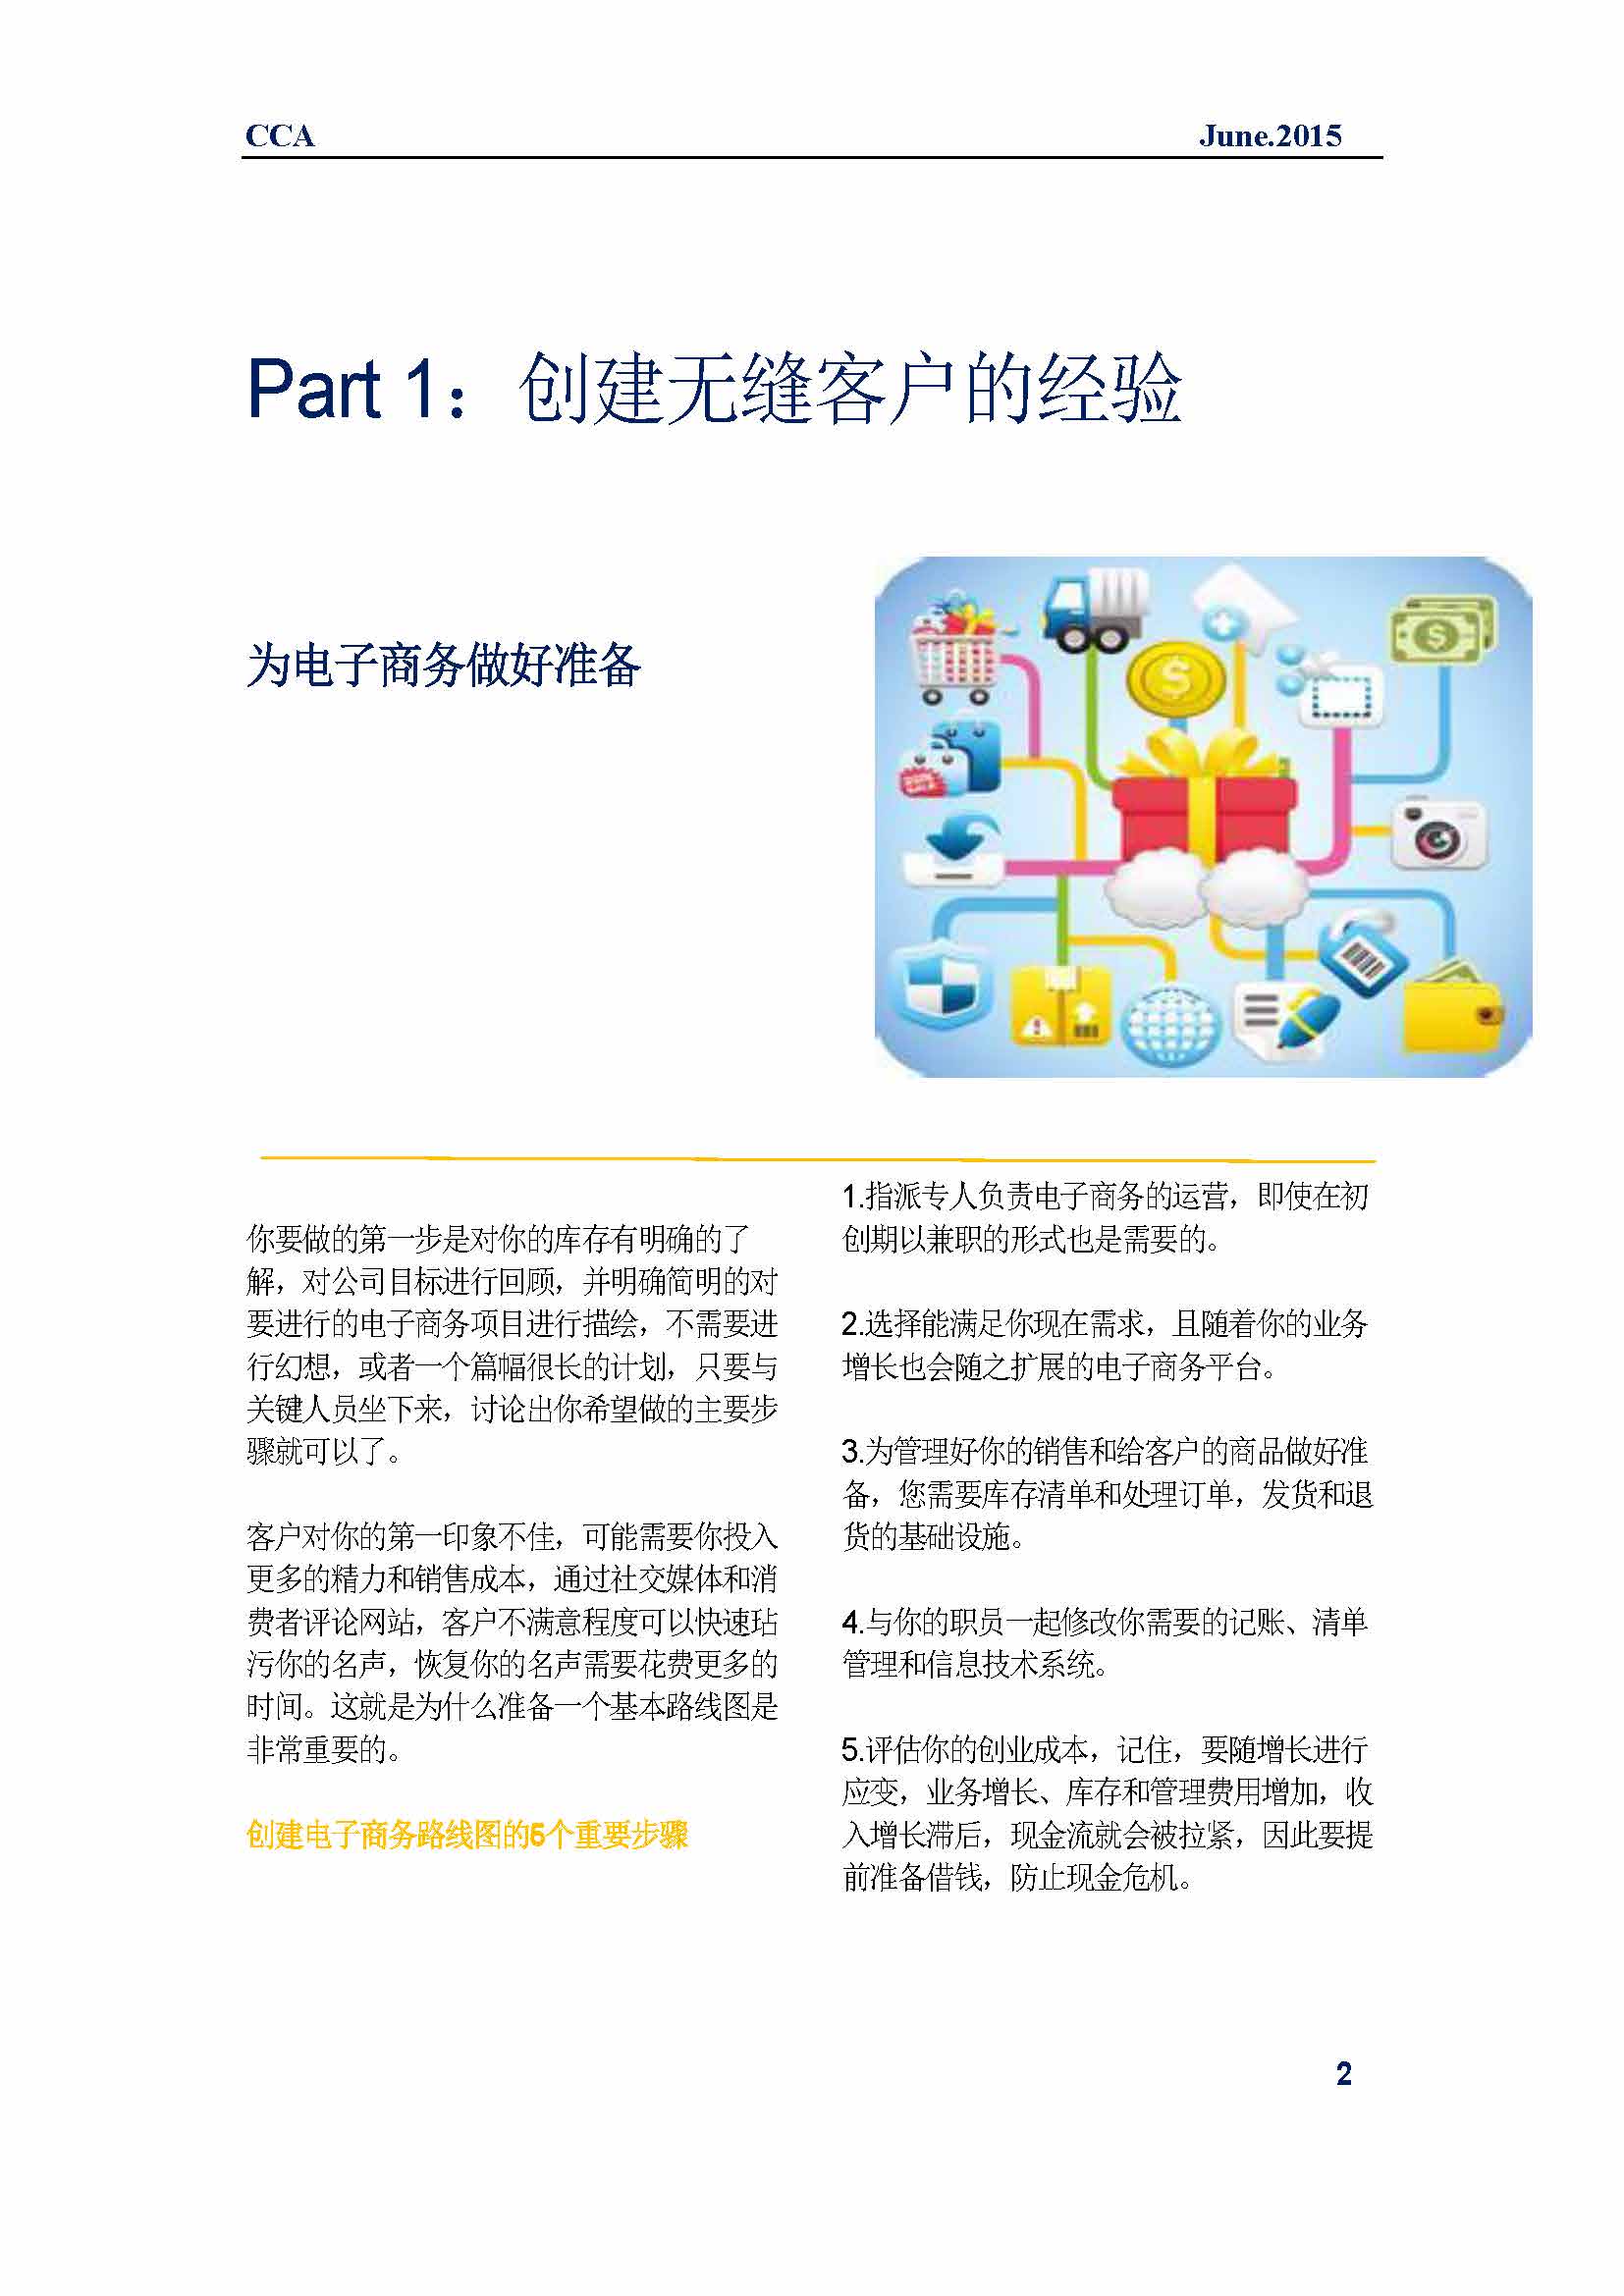 中国科技咨询协会国际快讯（第二十四期）_页面_05.jpg